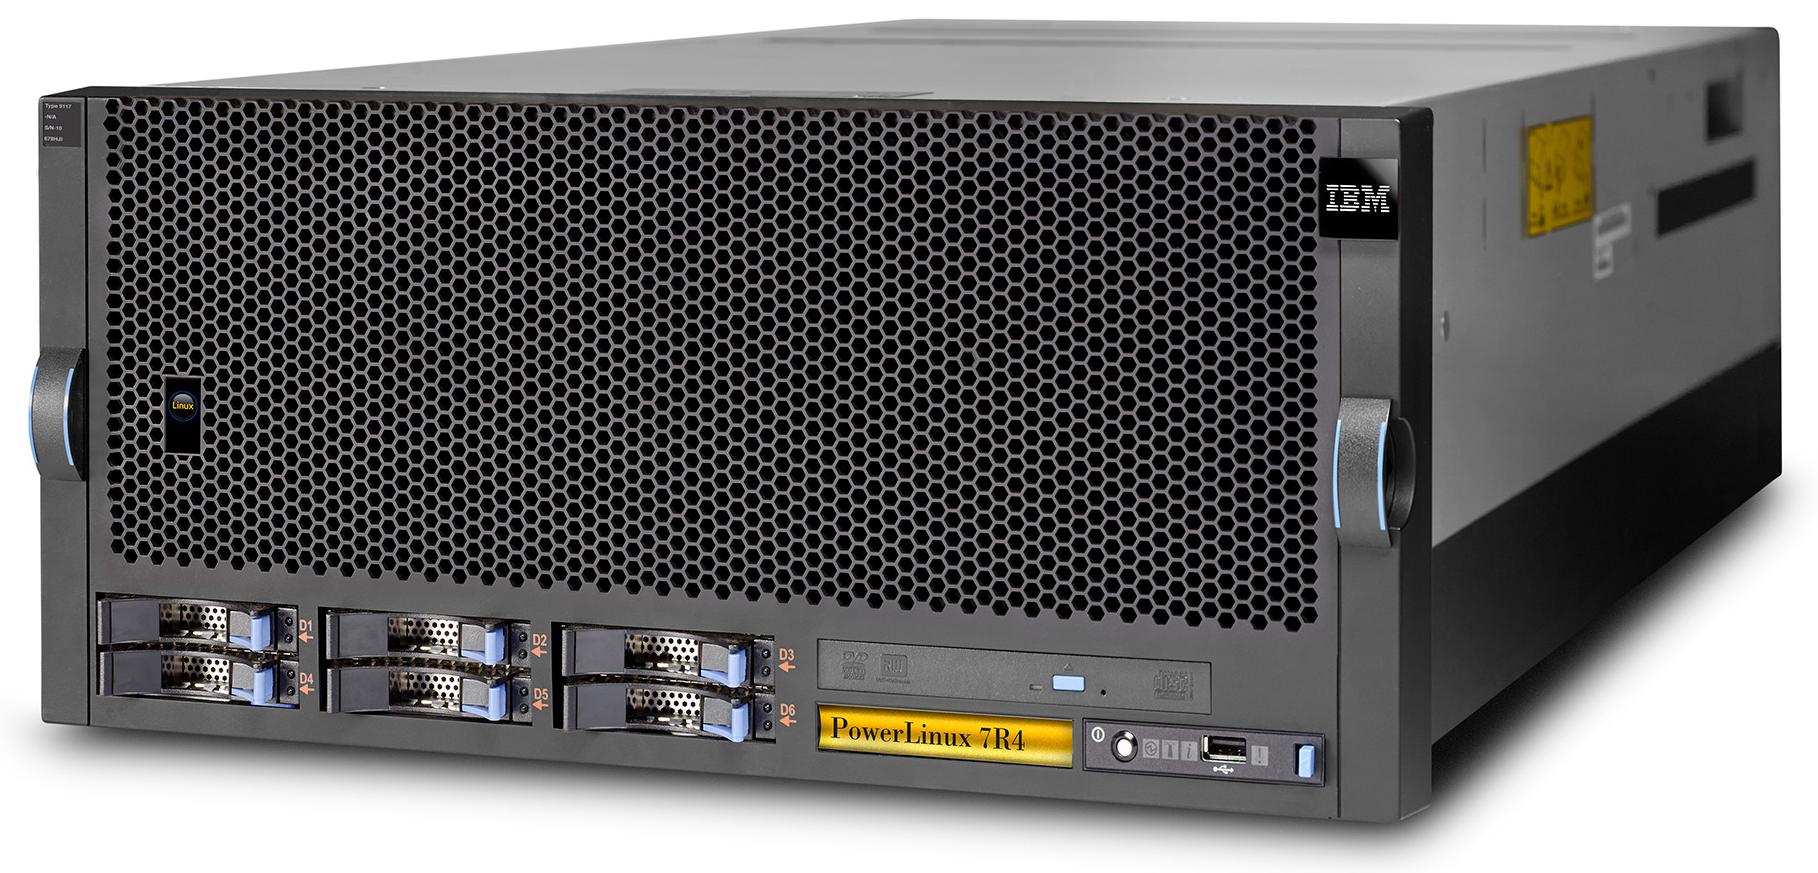 IBM presenta un nuevo servidor PowerLinux para analítica, Big Data y cloud computing